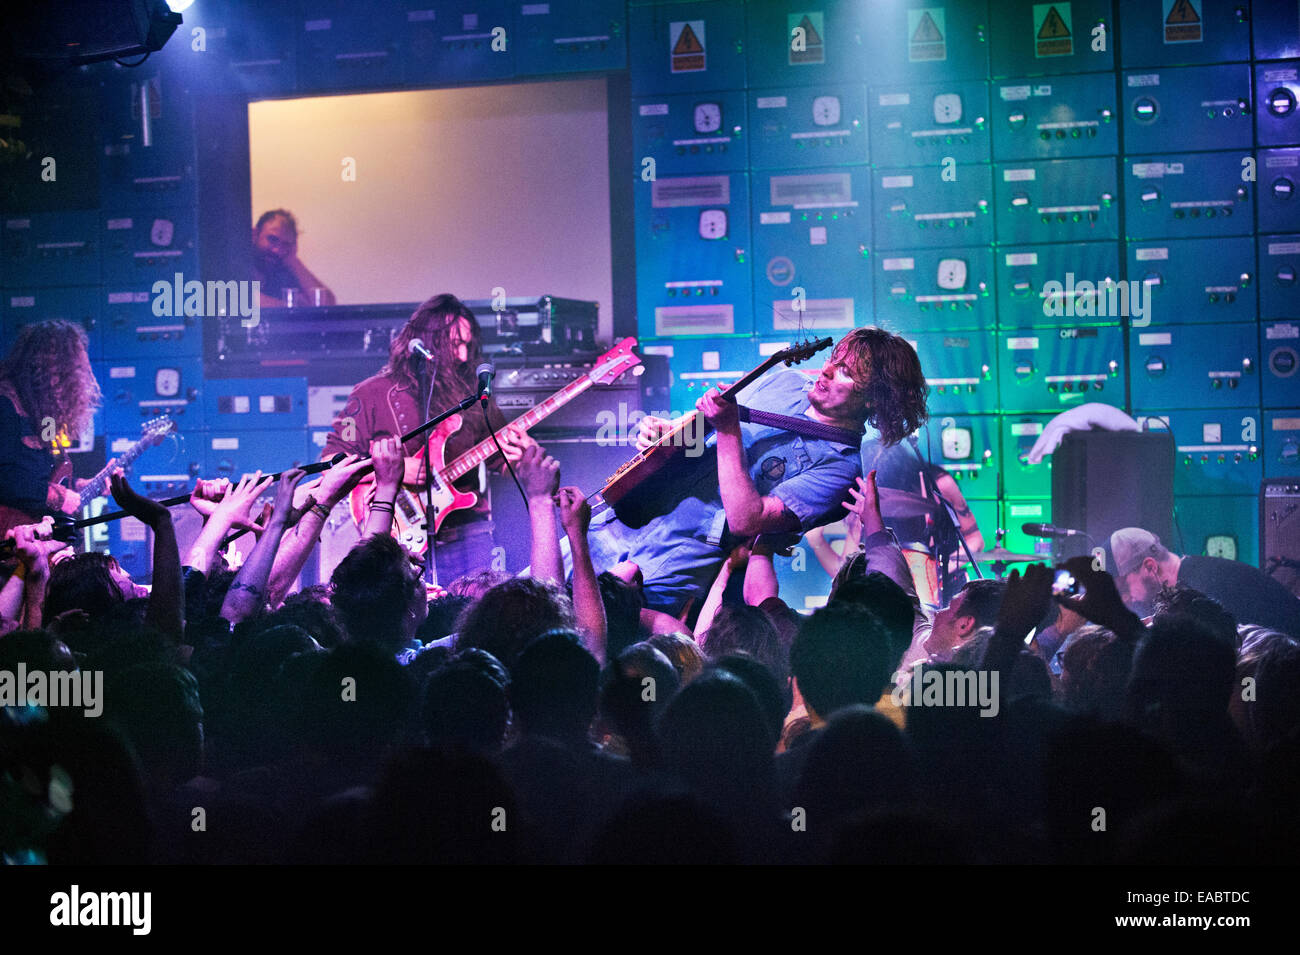 Manchester, UK. 10 Nov, 2014. Musicien rock américain Ty Segall en concert à Gorilla à Manchester le 10 novembre 2014 Banque D'Images